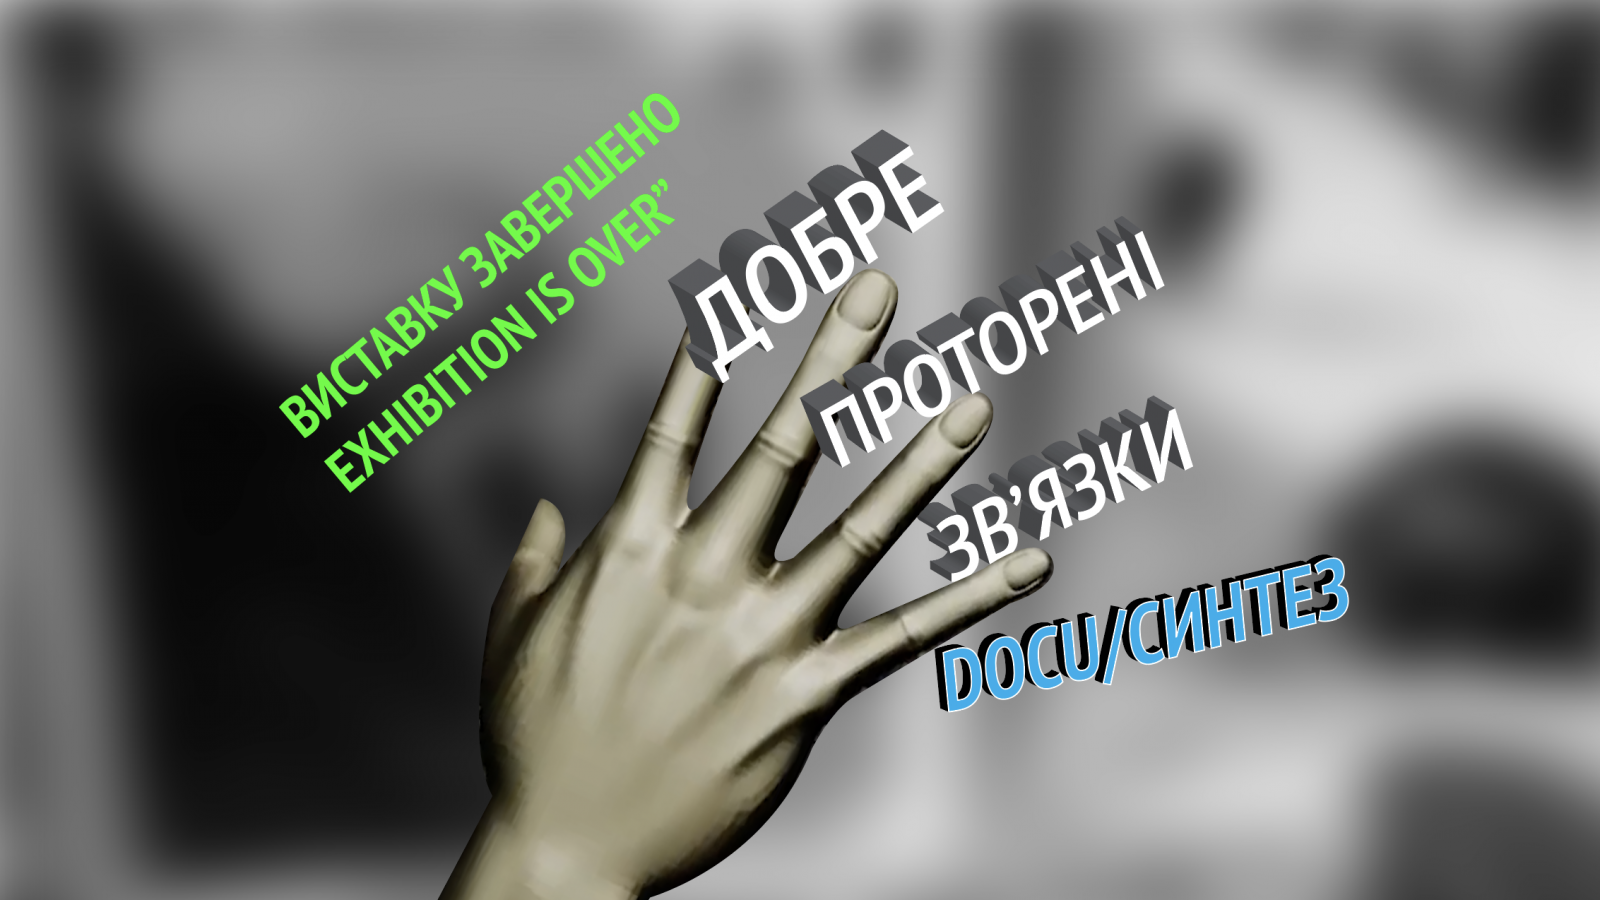 rus: постер події із датами проведення та назвою, текст розташований поміж пальців низькополігональної моделі долоні